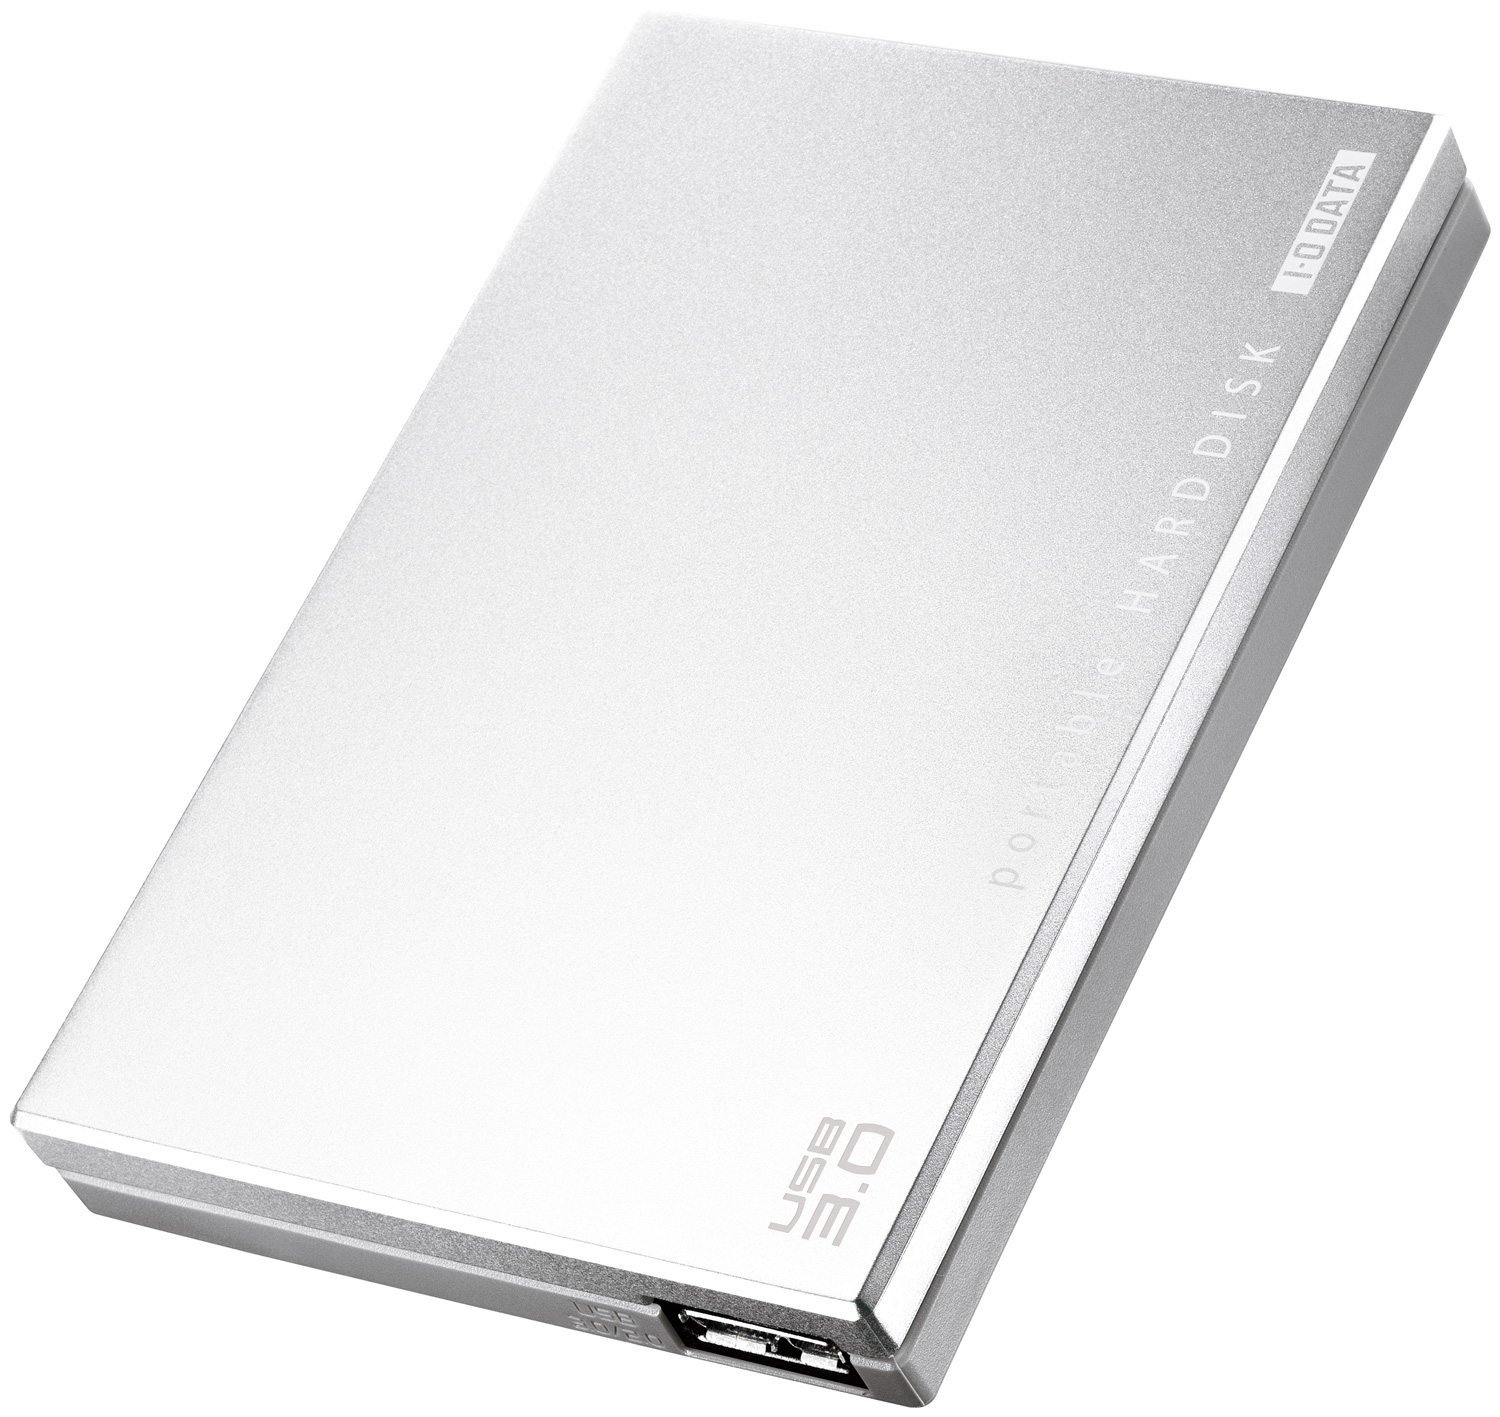 I-O DATA 外付けHDD ポータブルハードディスク型 1.0TB